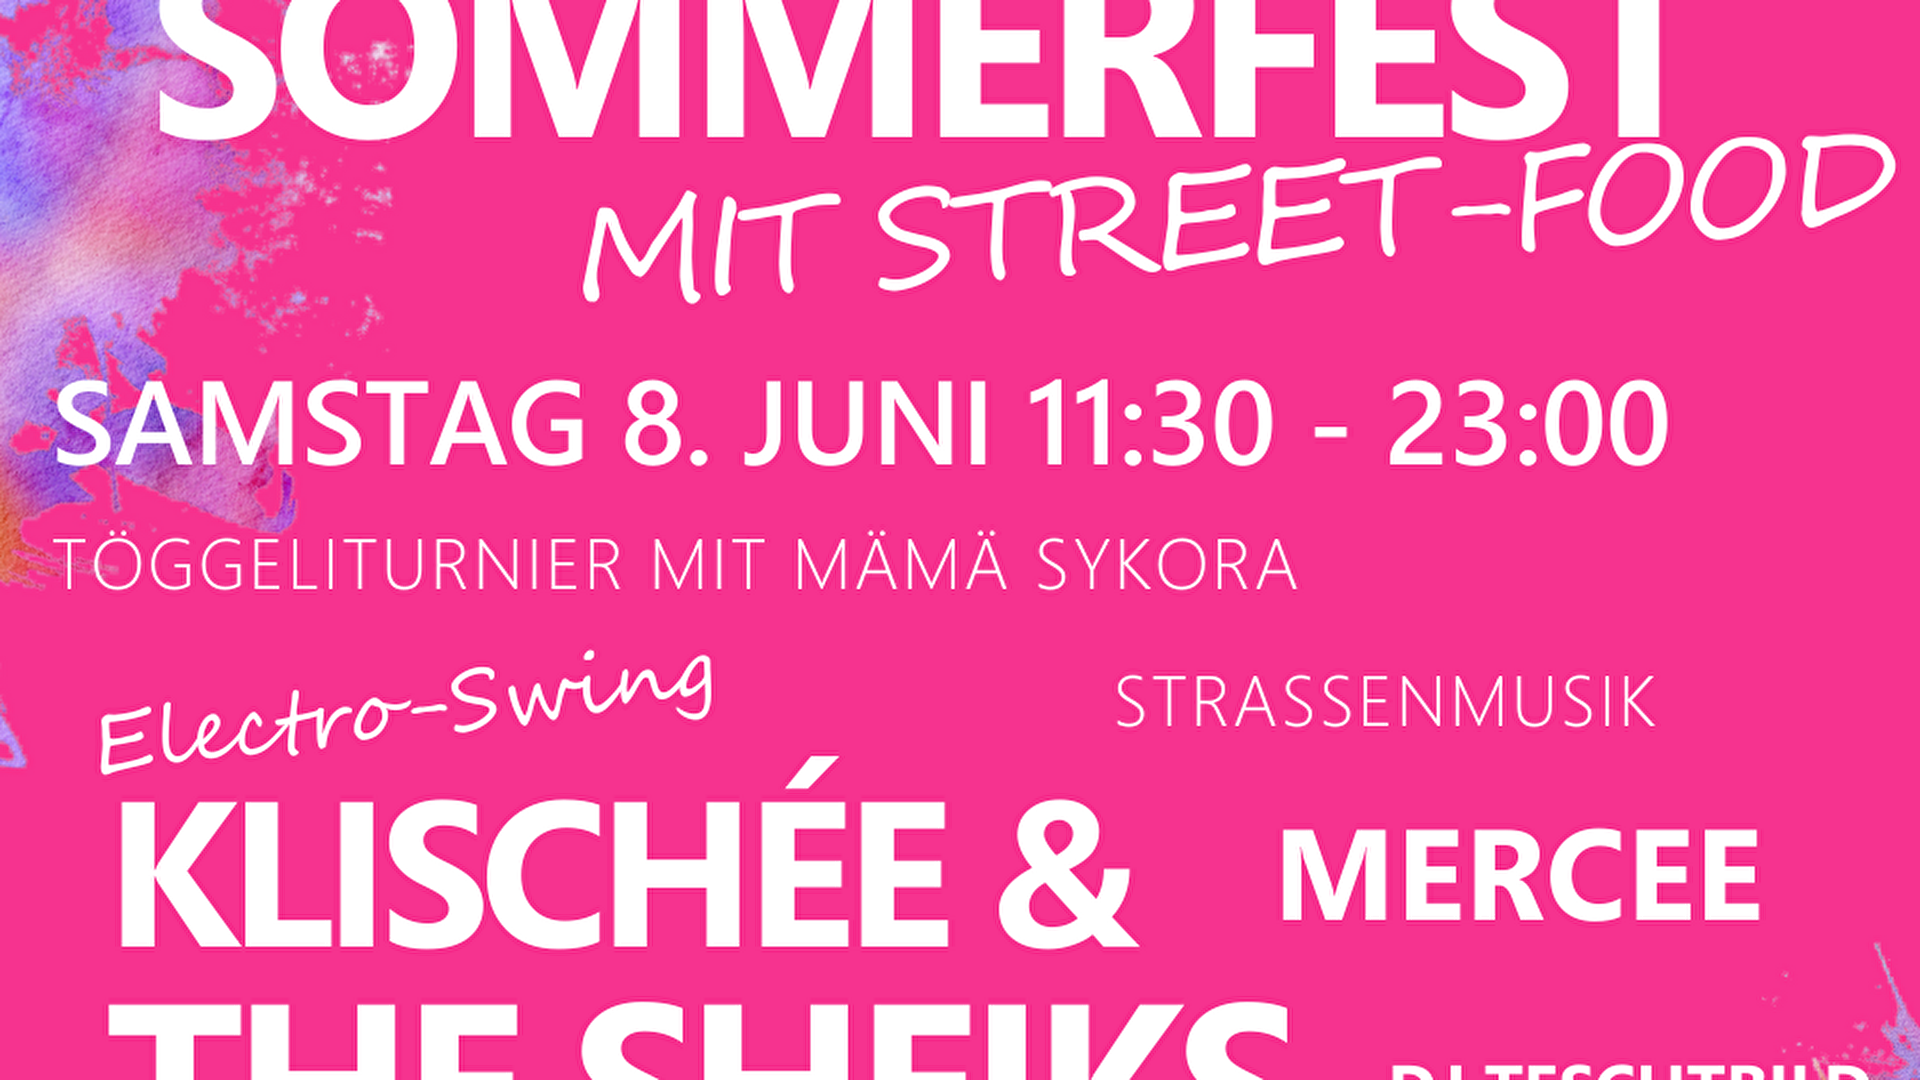 Sommerfest Samstag